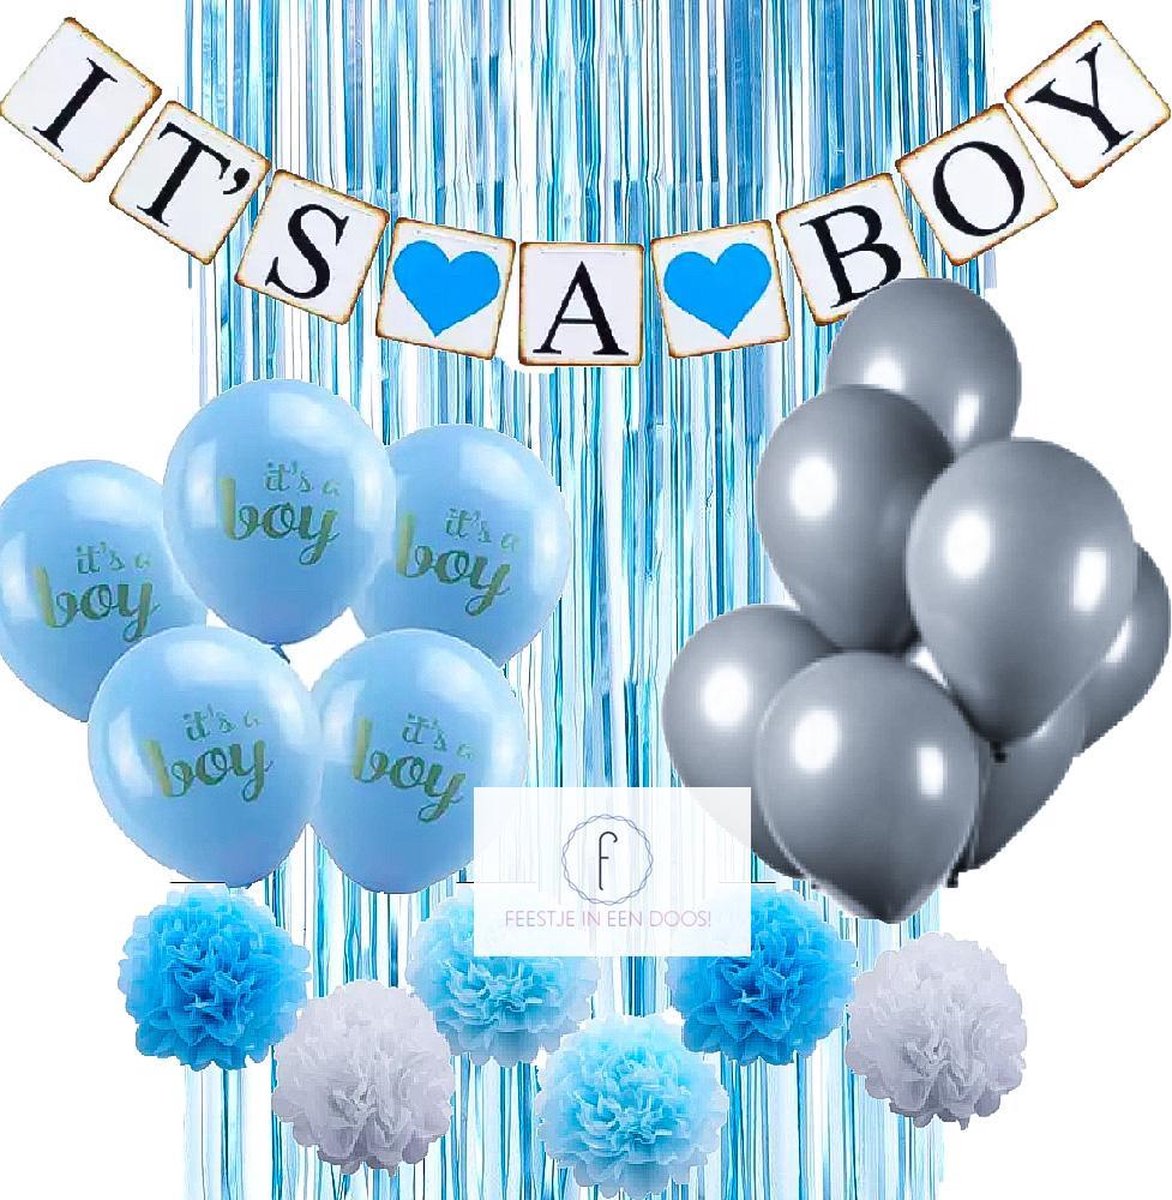 Its a boy - jongen geboorte decoratie - kraamfeest feestpakket | bol.com